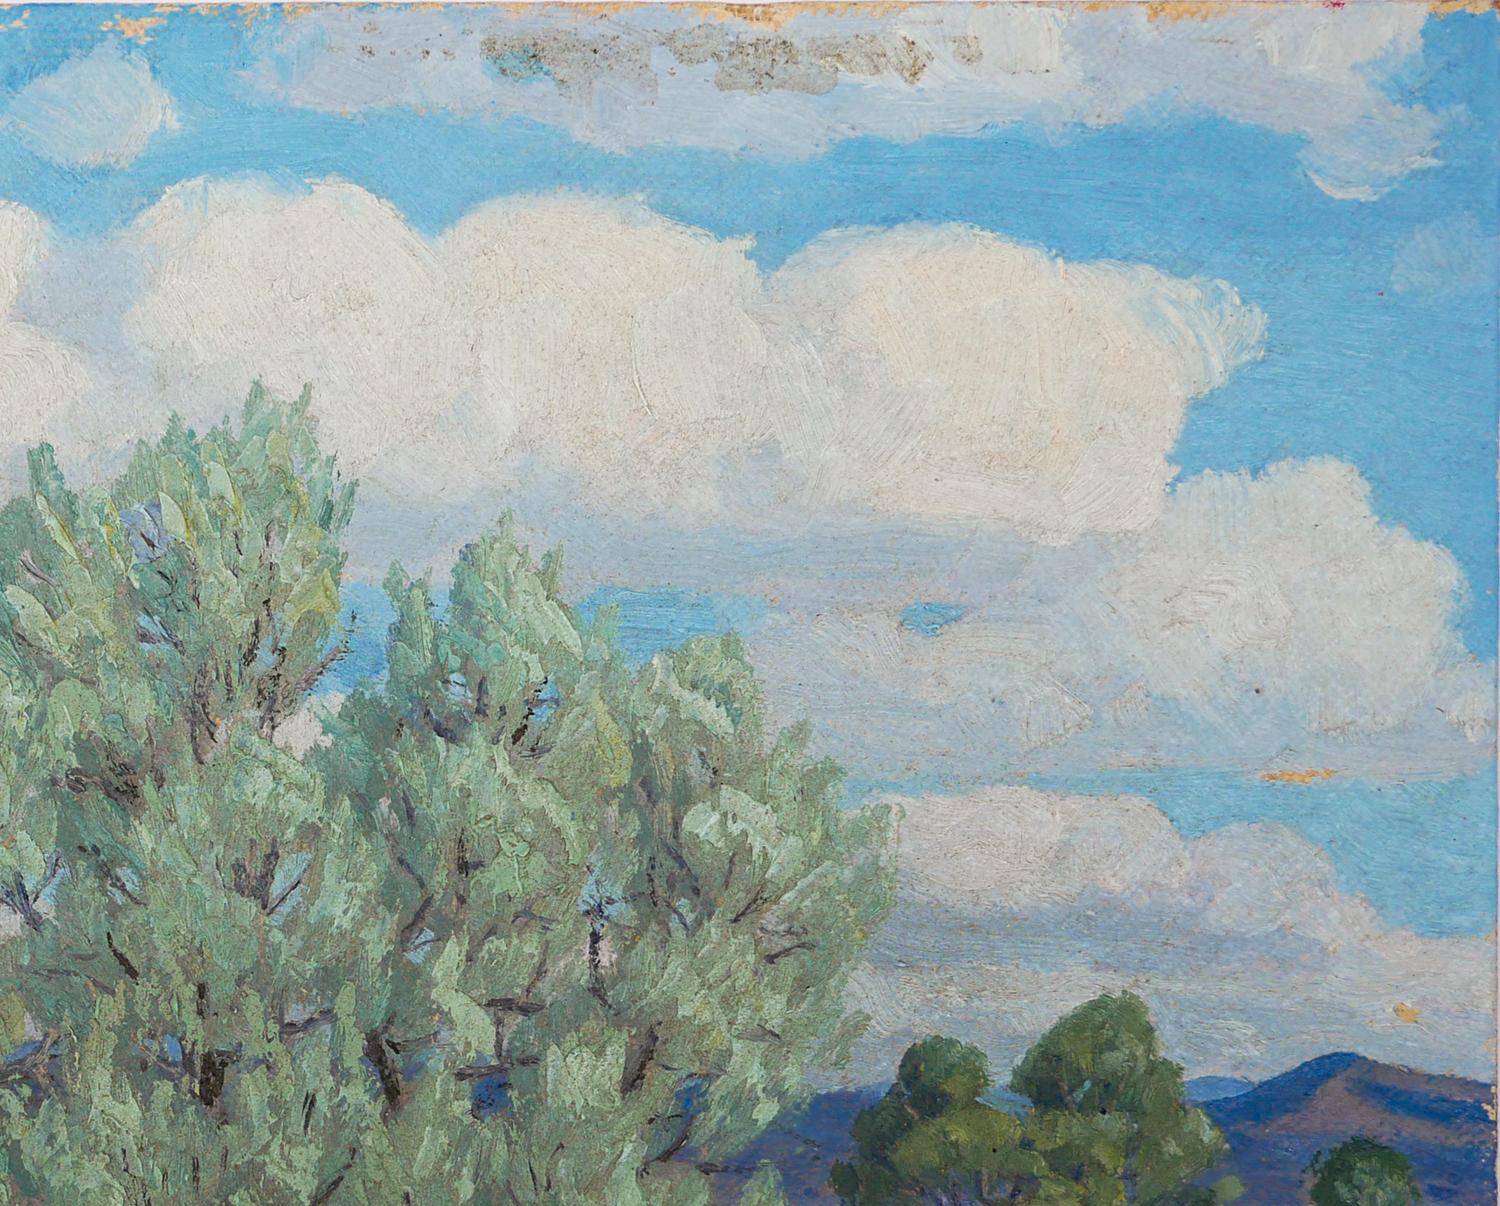 Paysage de western impressionniste abstrait vert, jaune et bleu de l'artiste texan Fred Darge. Le tableau représente un désert aride avec un énorme buisson de sauge du désert sur un paysage montagneux avec des nuages couverts. Signé par l'artiste